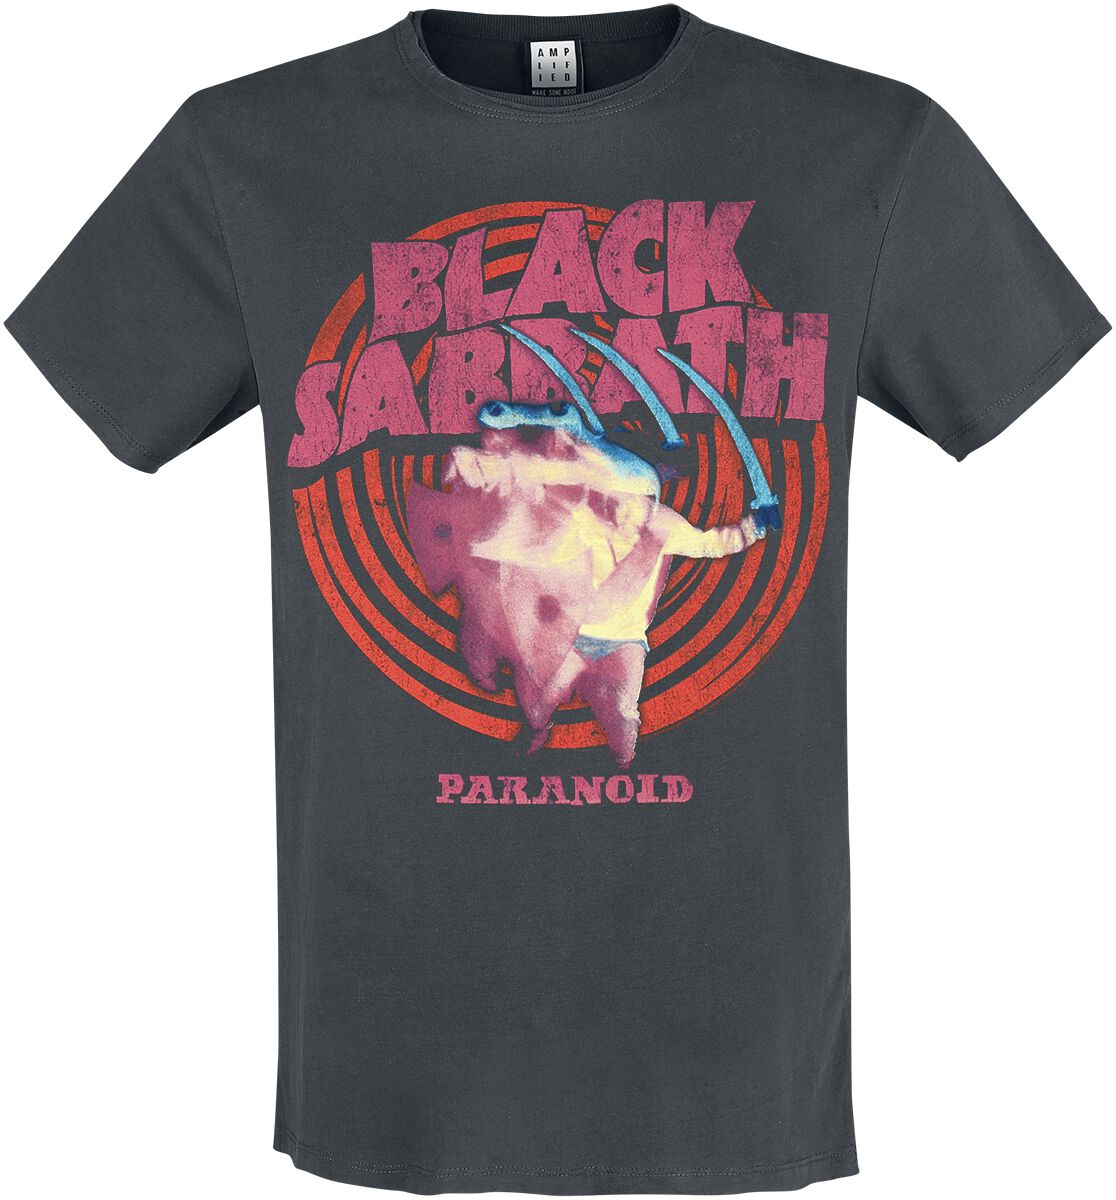 Black Sabbath T-Shirt - Amplified Collection - Paranoid - S bis 3XL - für Männer - Größe M - charcoal  - Lizenziertes Merchandise!